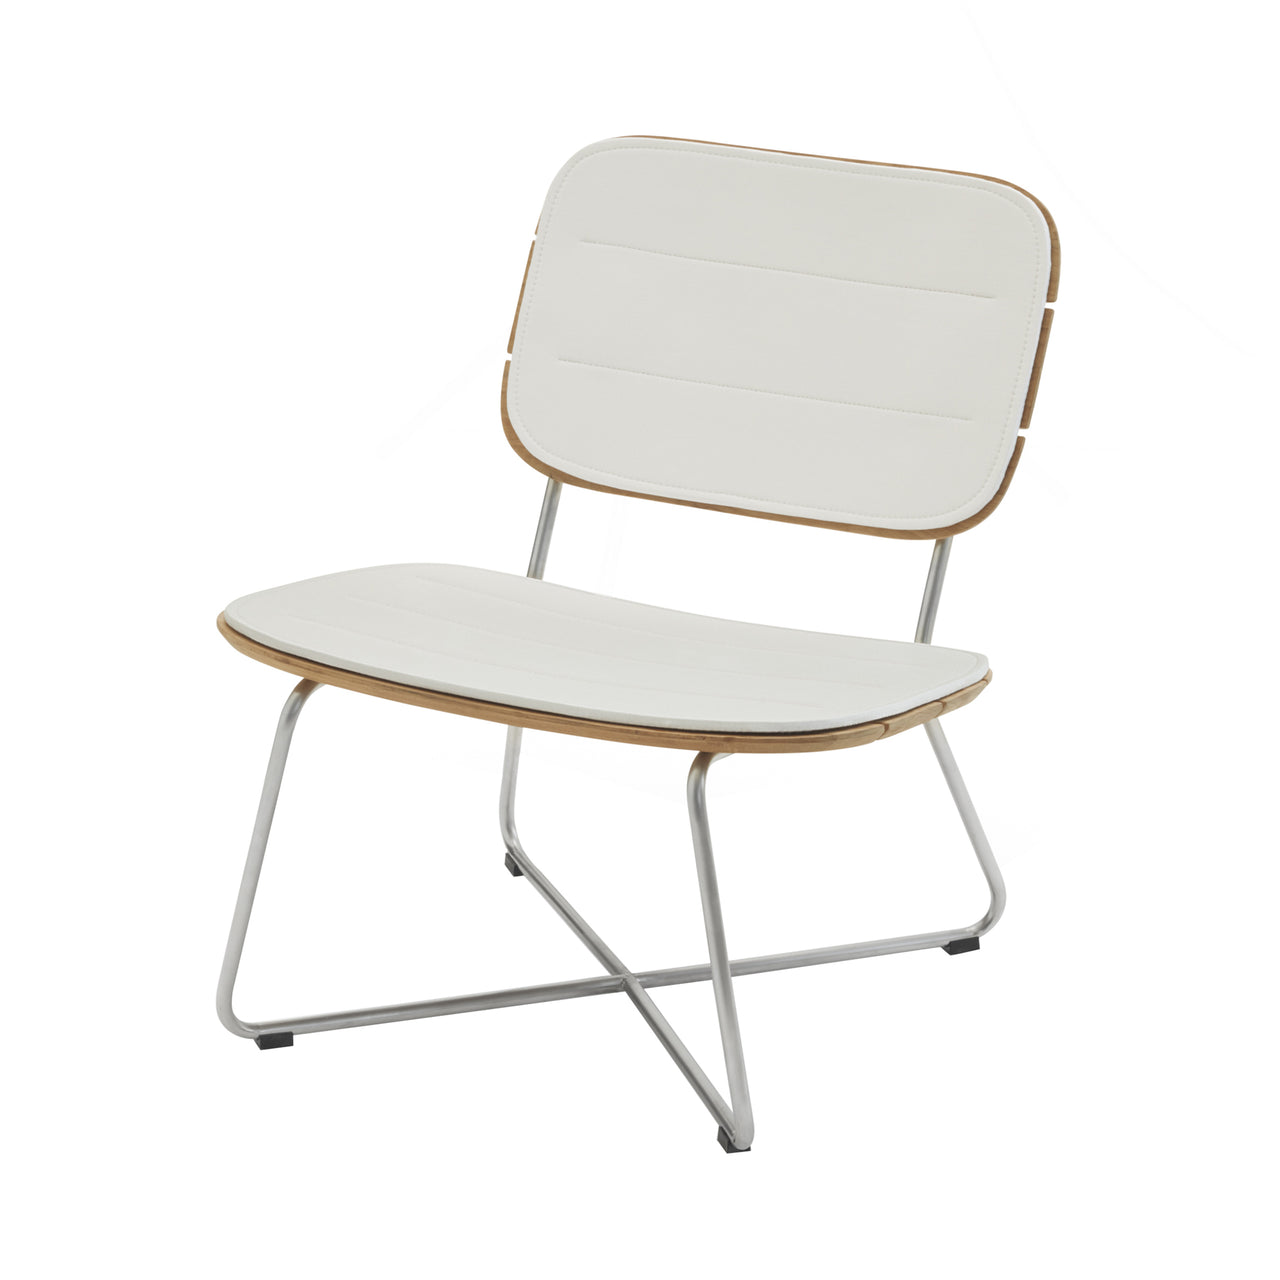 Lilium Lounge Chair: White Cushion